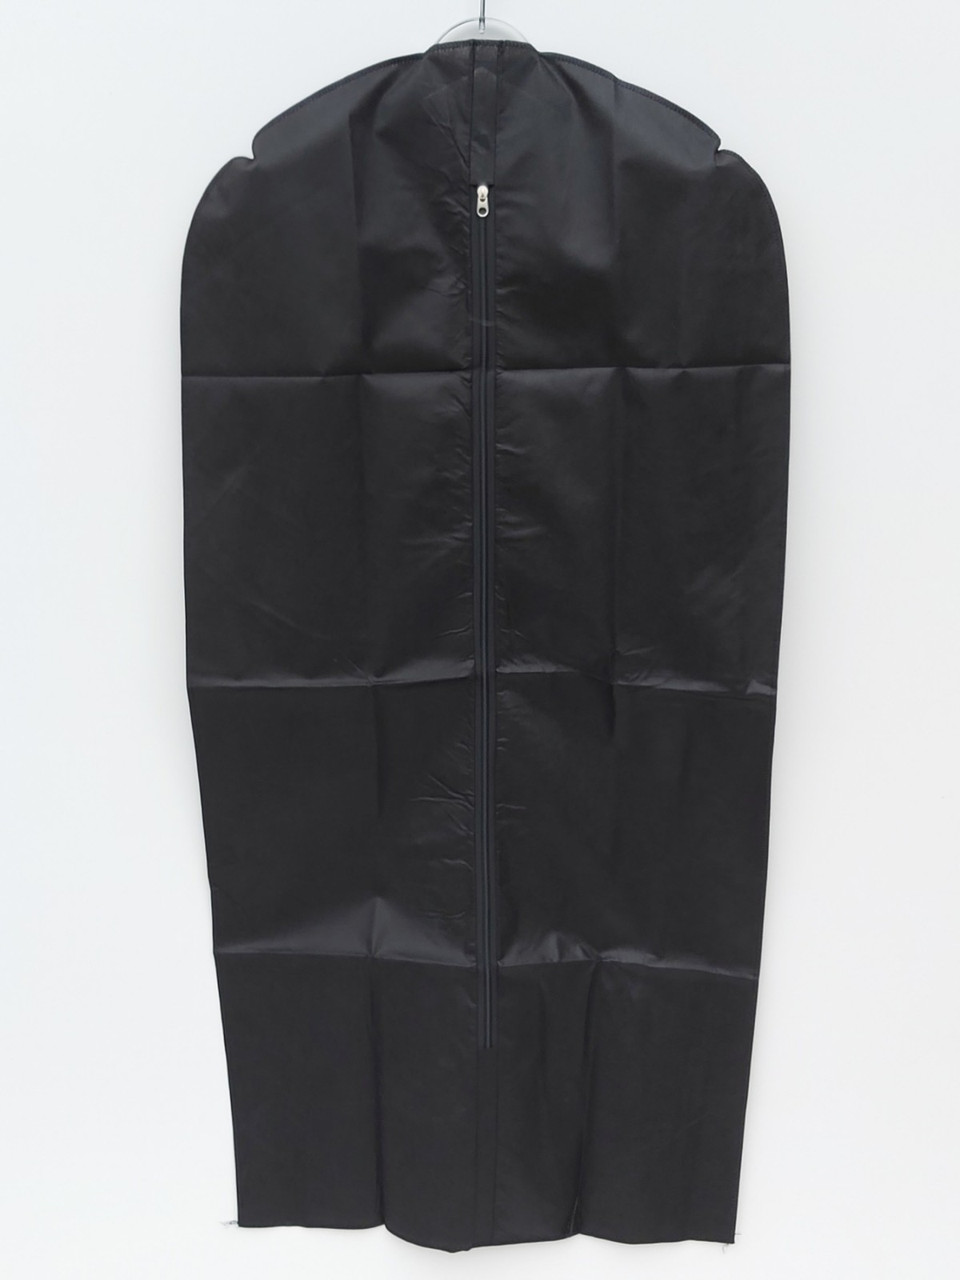 Чохол для зберігання і упаковки одягу на блискавці флізеліновий чорного кольору. Розмір 60 см*160 см.